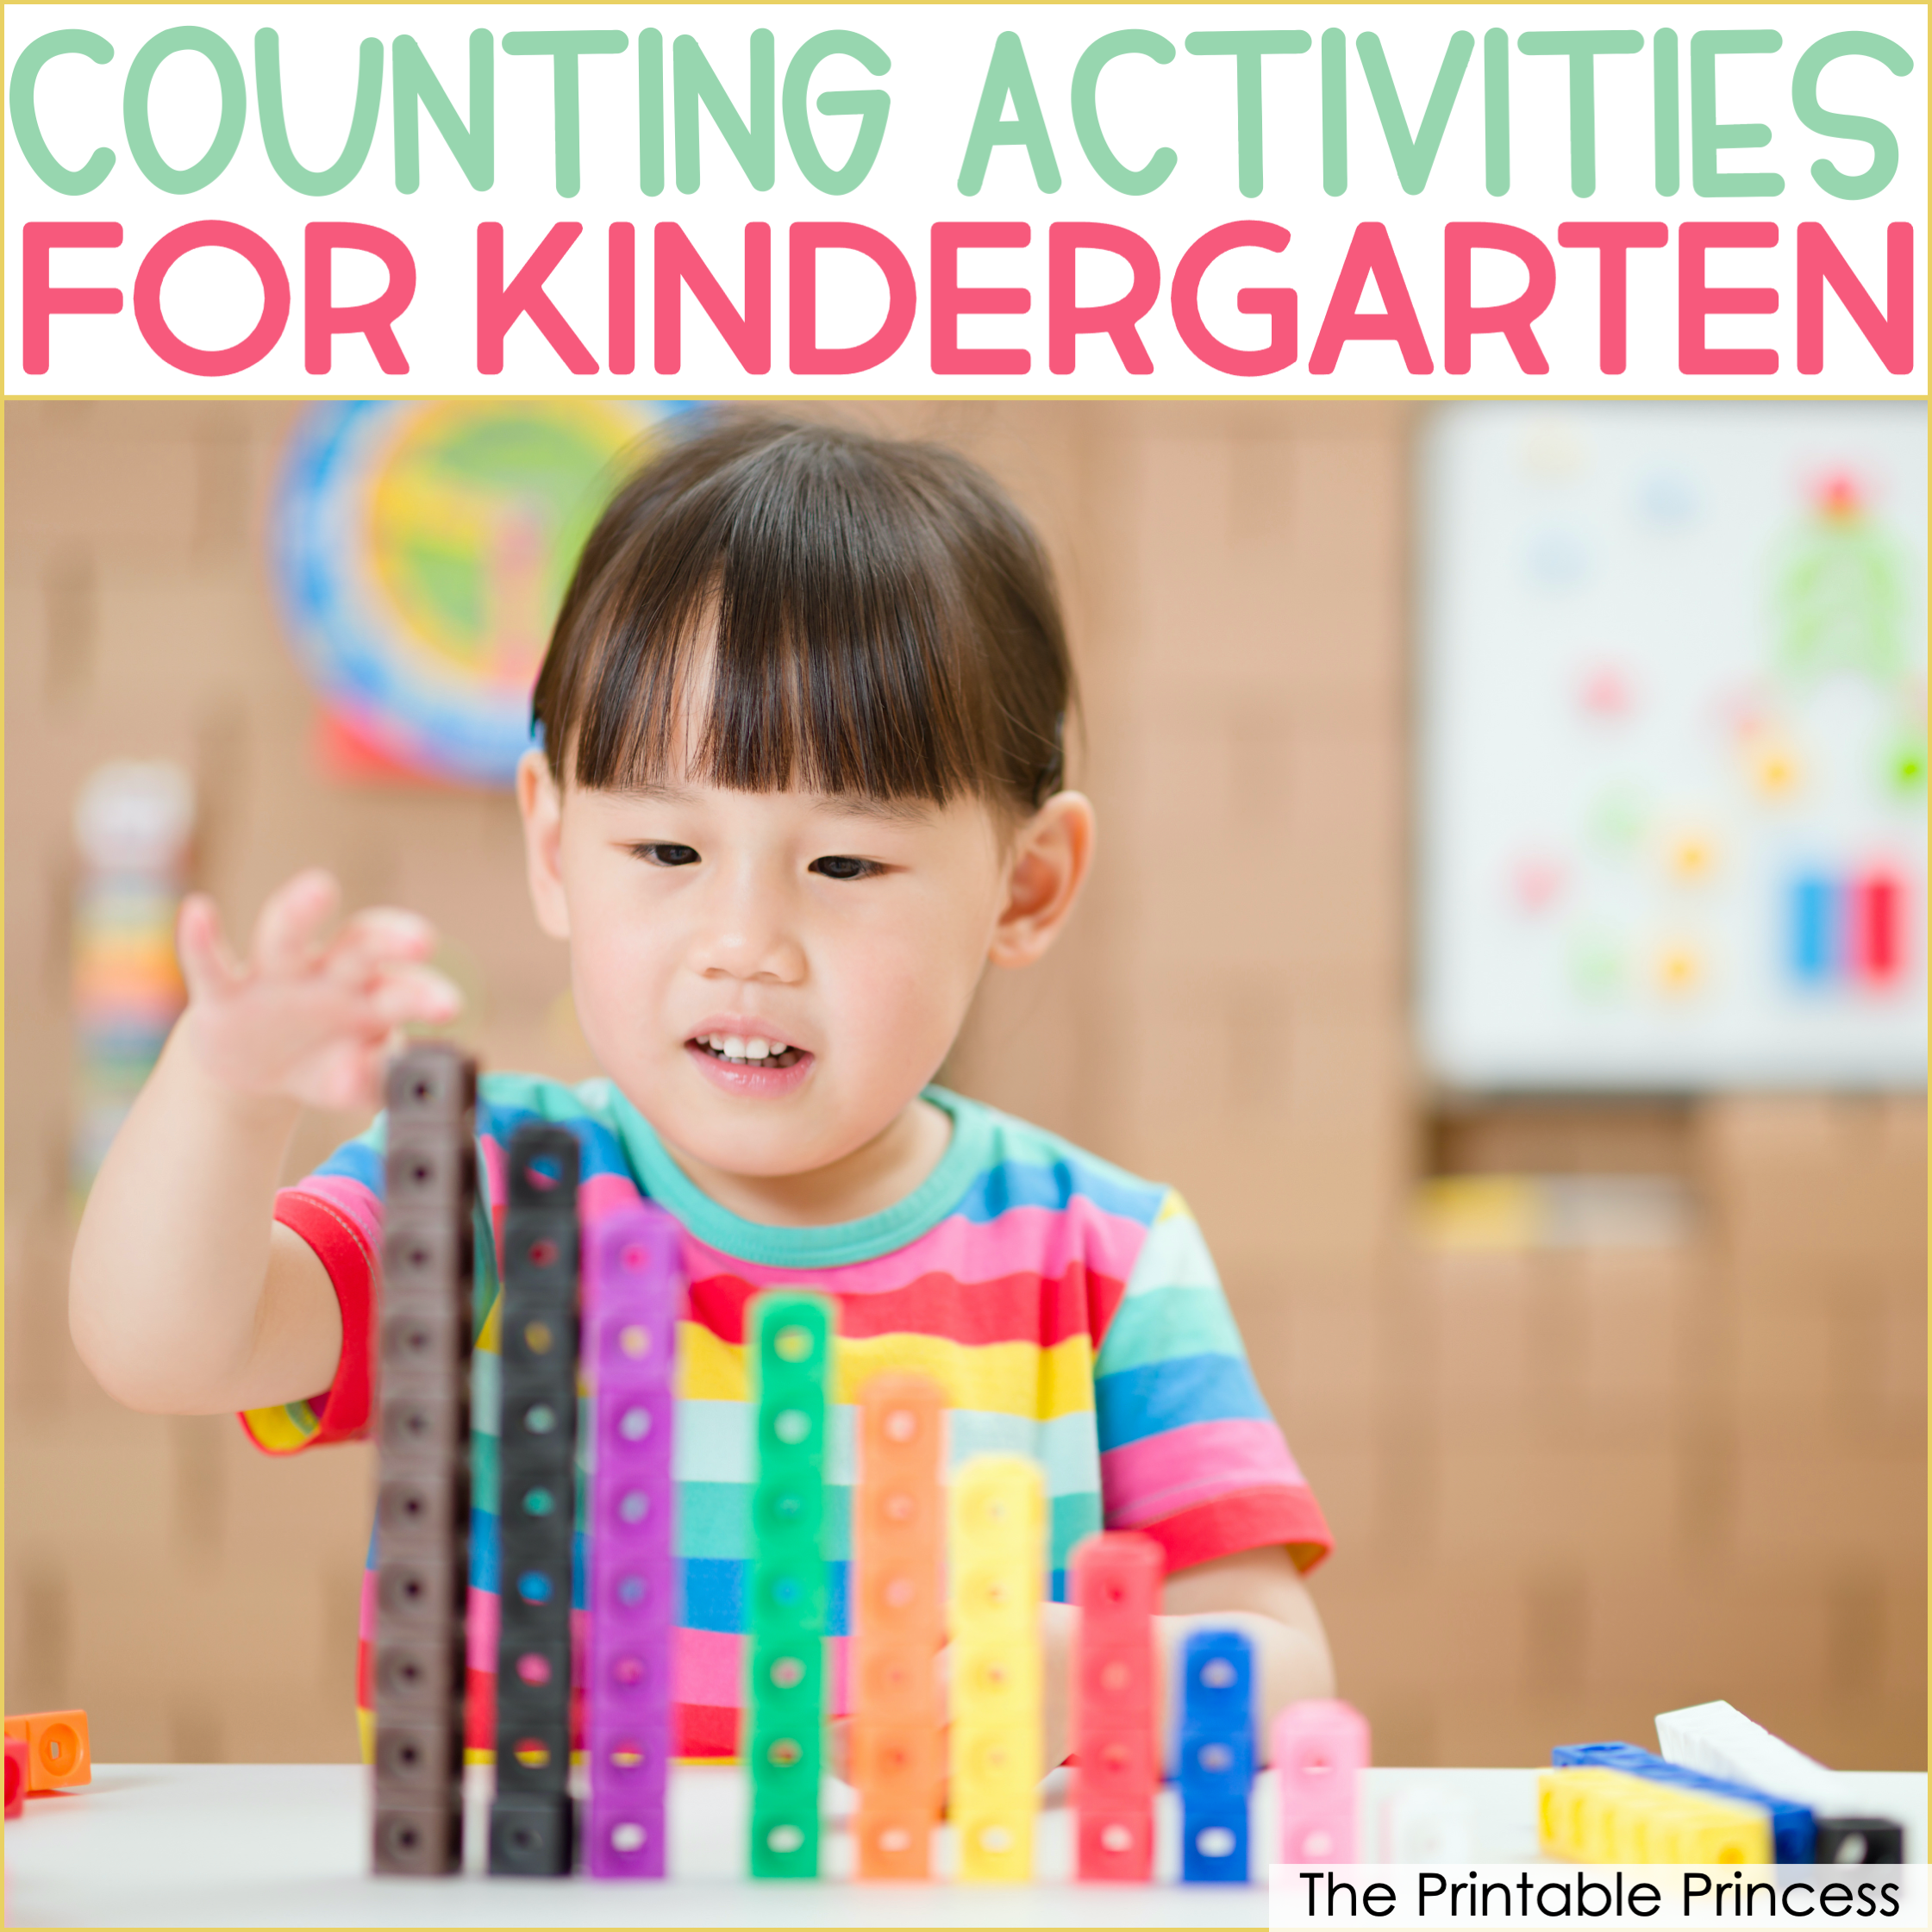 14 Counting Activities for Kindergarten